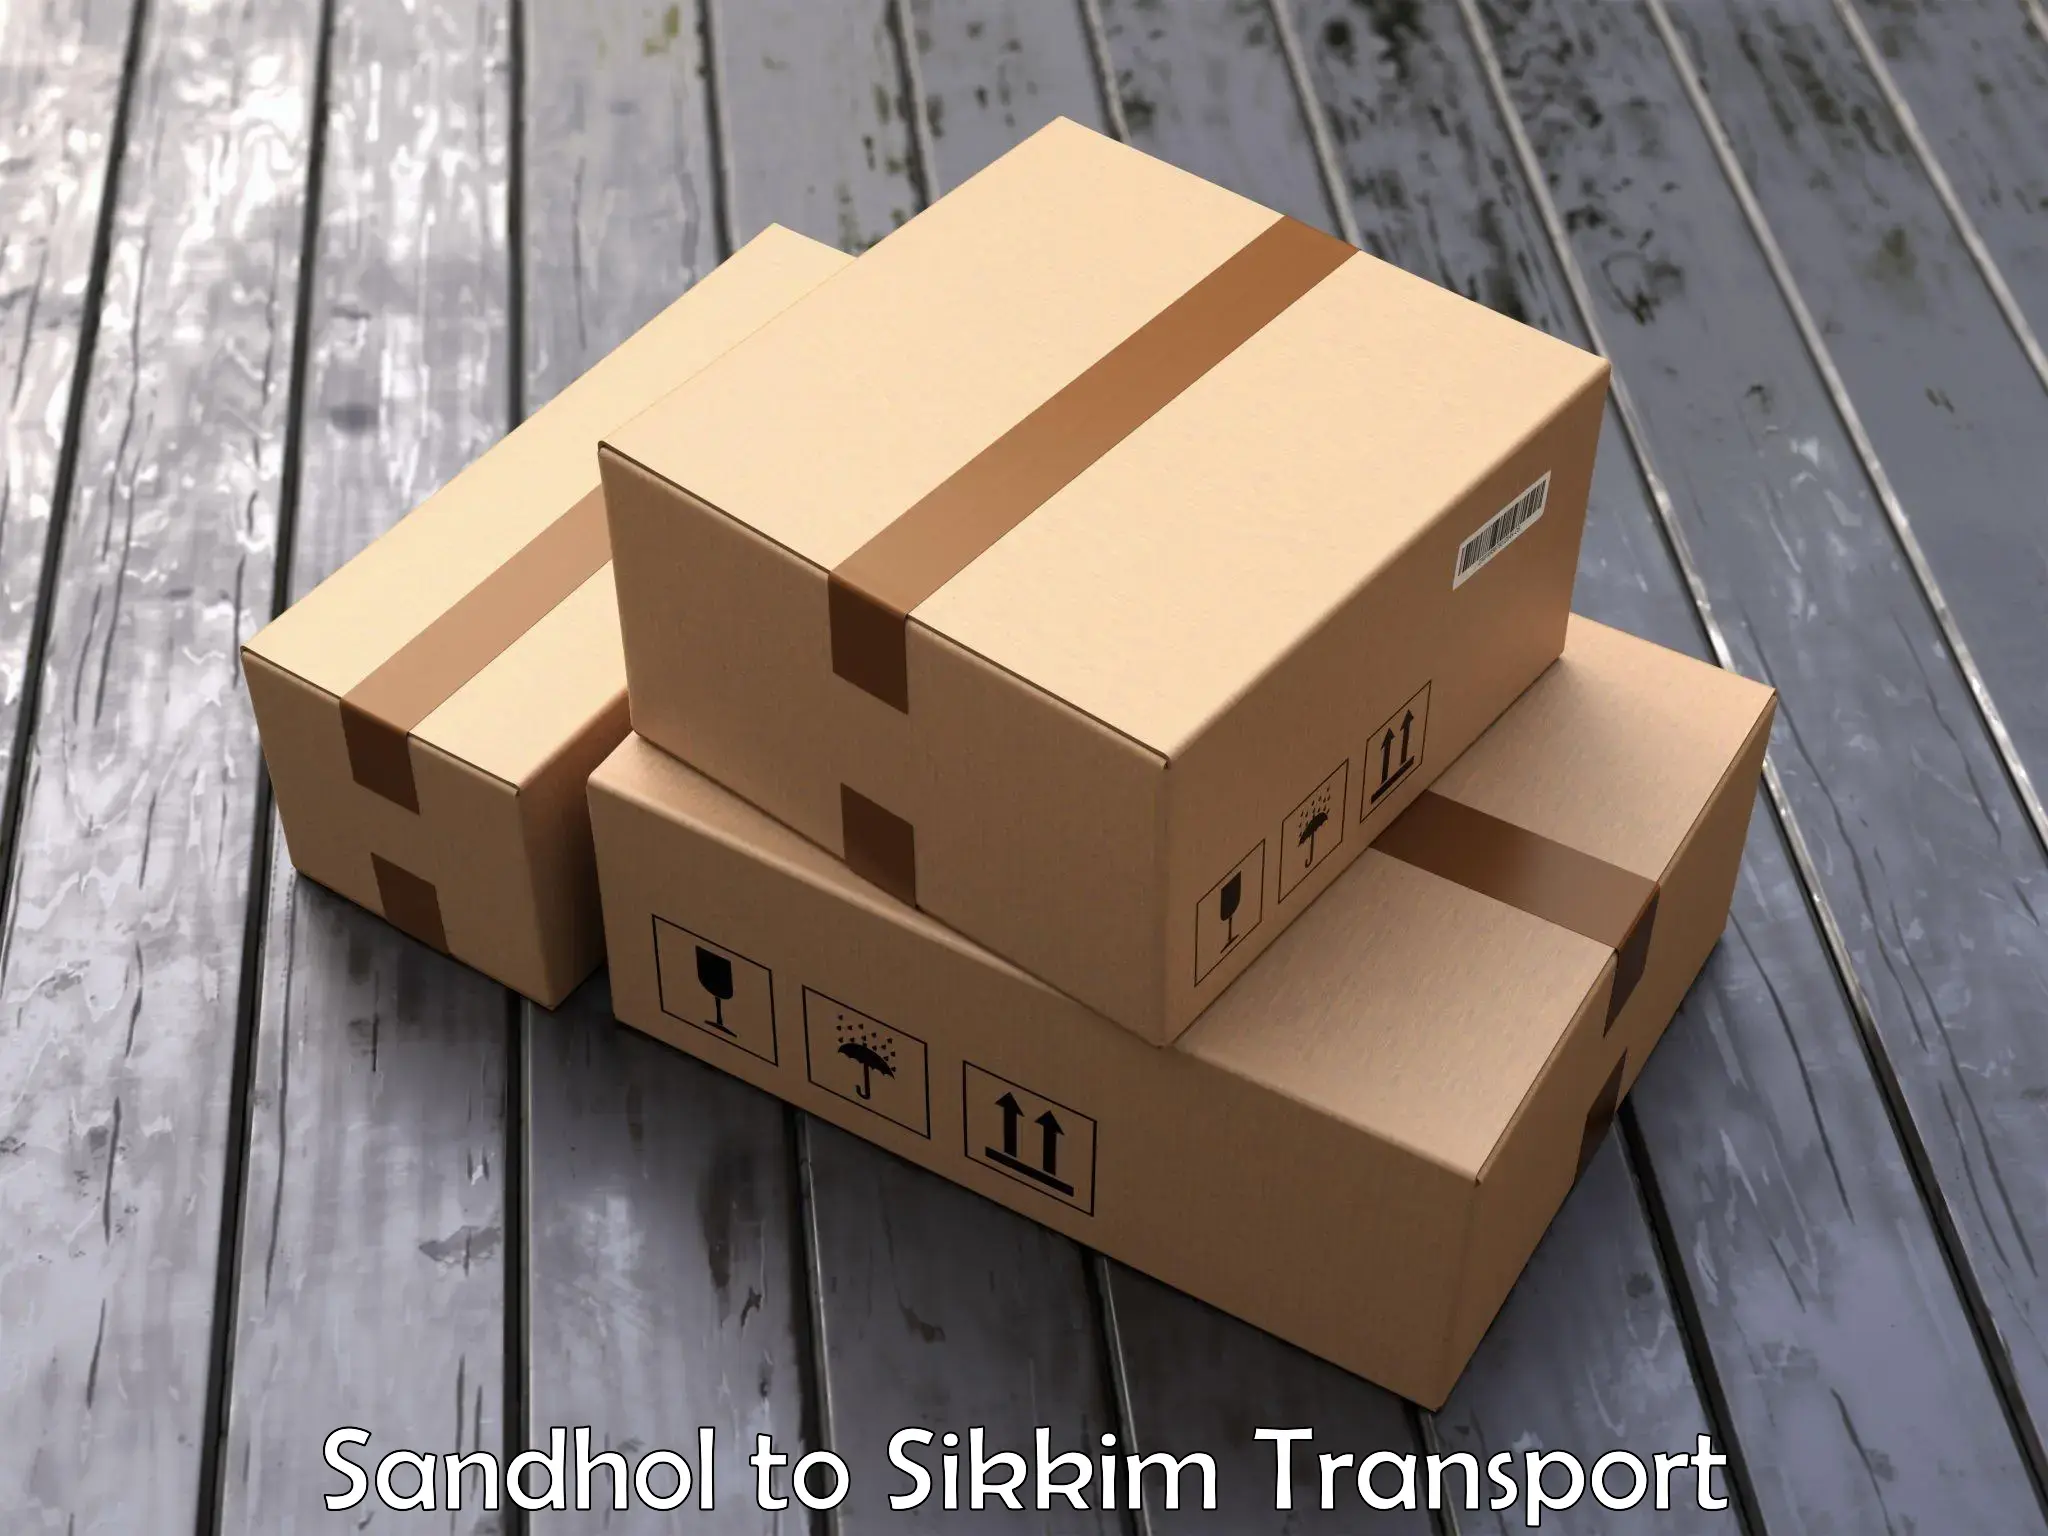 Nearest transport service Sandhol to Gangtok